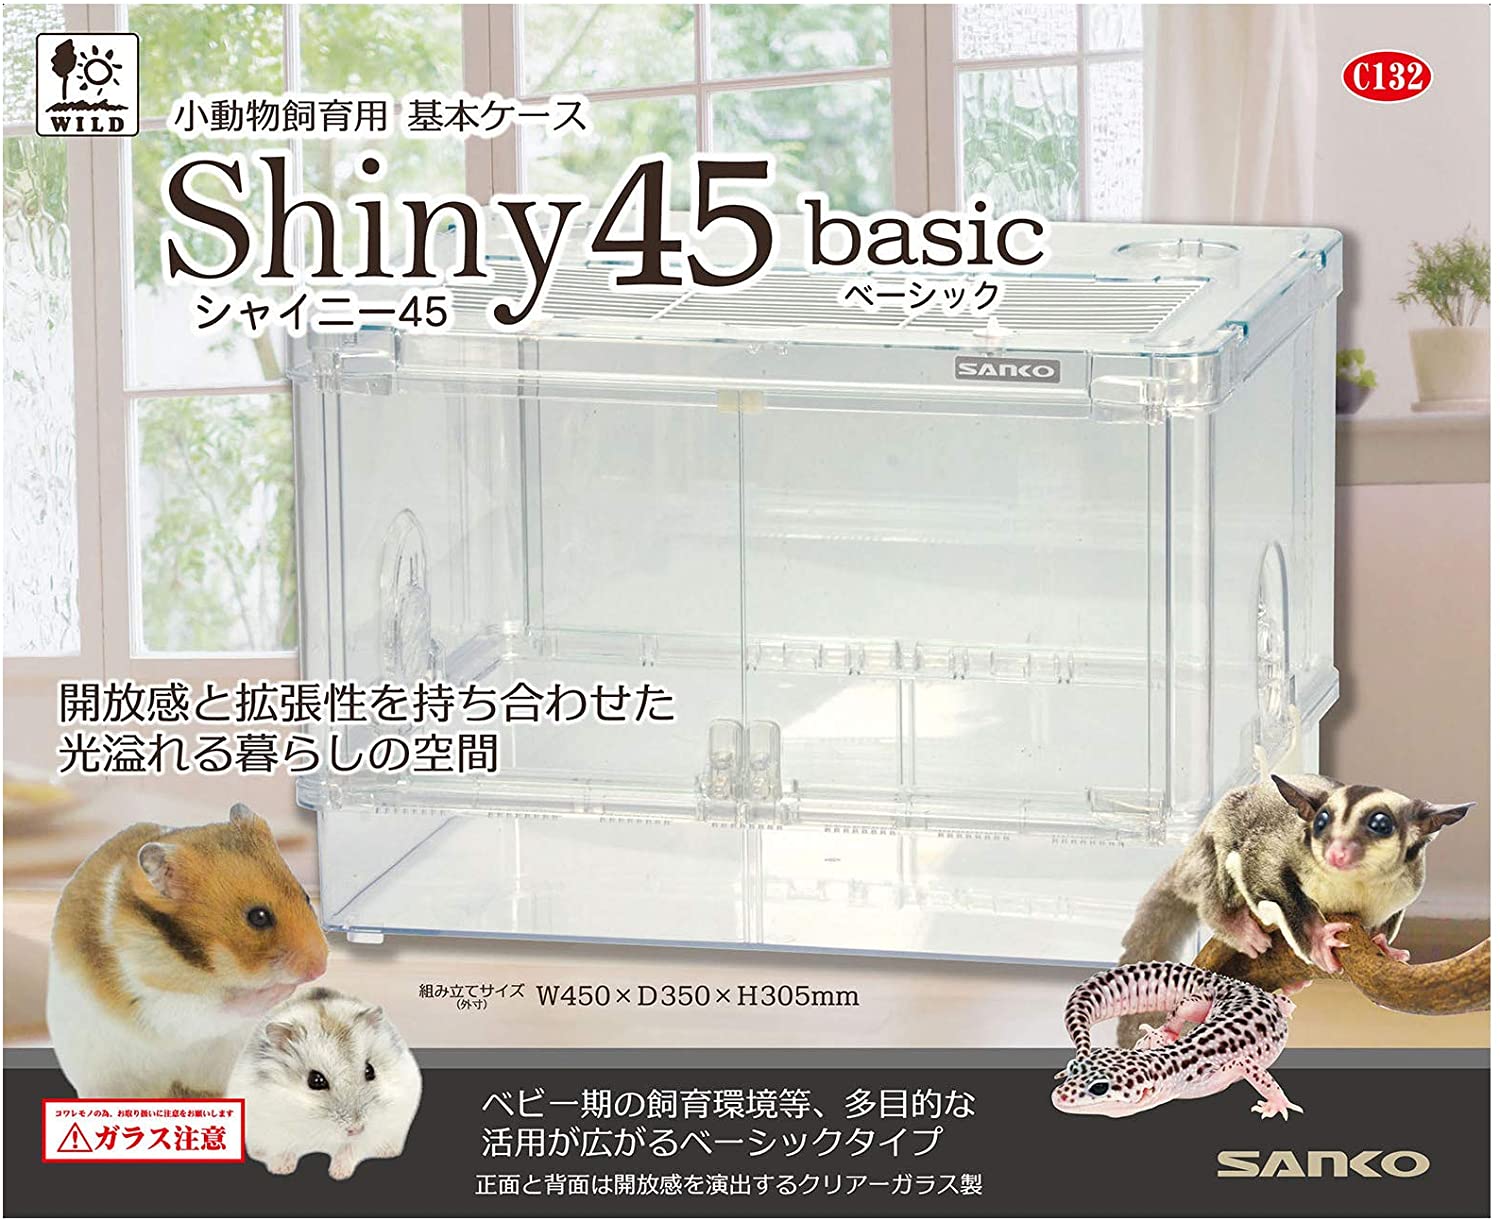 SANKO シャイニー45 ベーシック 5☆好評 x ついに再販開始 45x36.5x31.5センチメートル 1